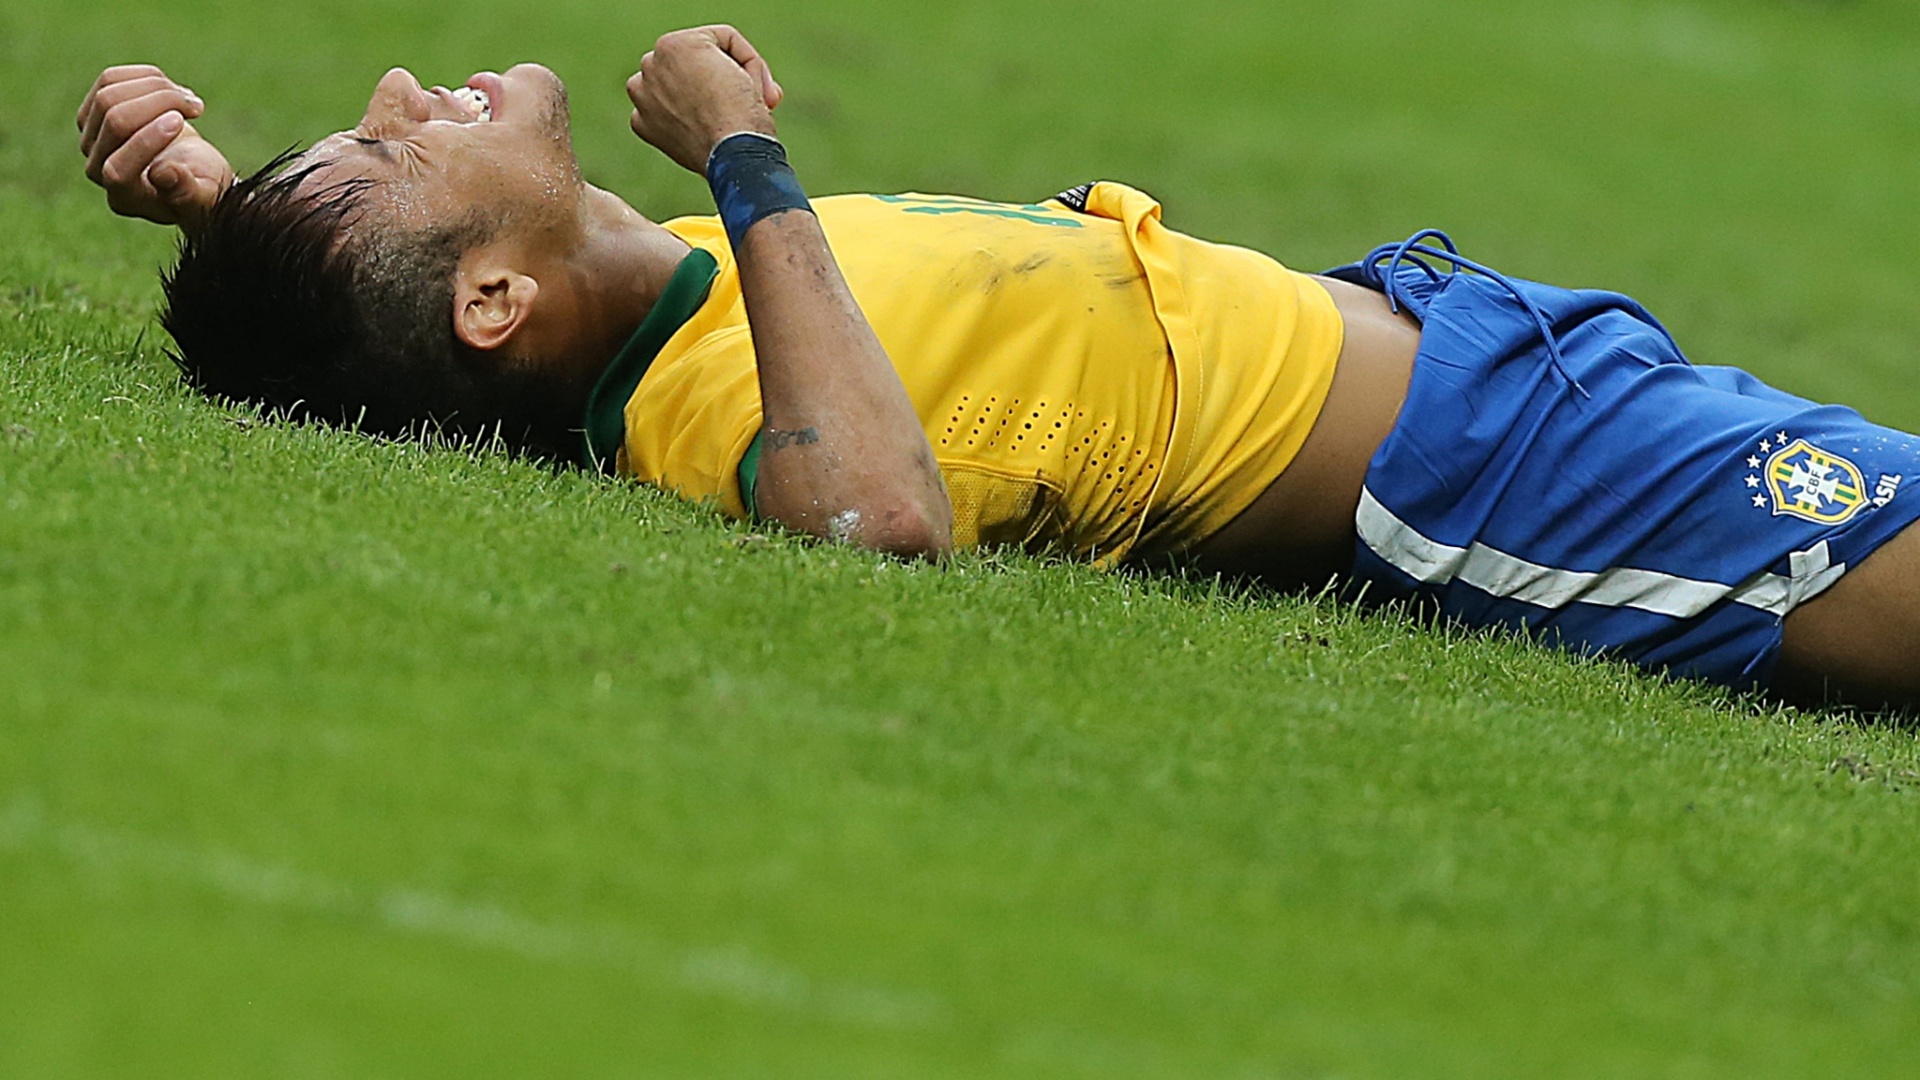 09.jun.2013 - Neymar cai no gramado após sofrer falta em amistoso entre Brasil e França